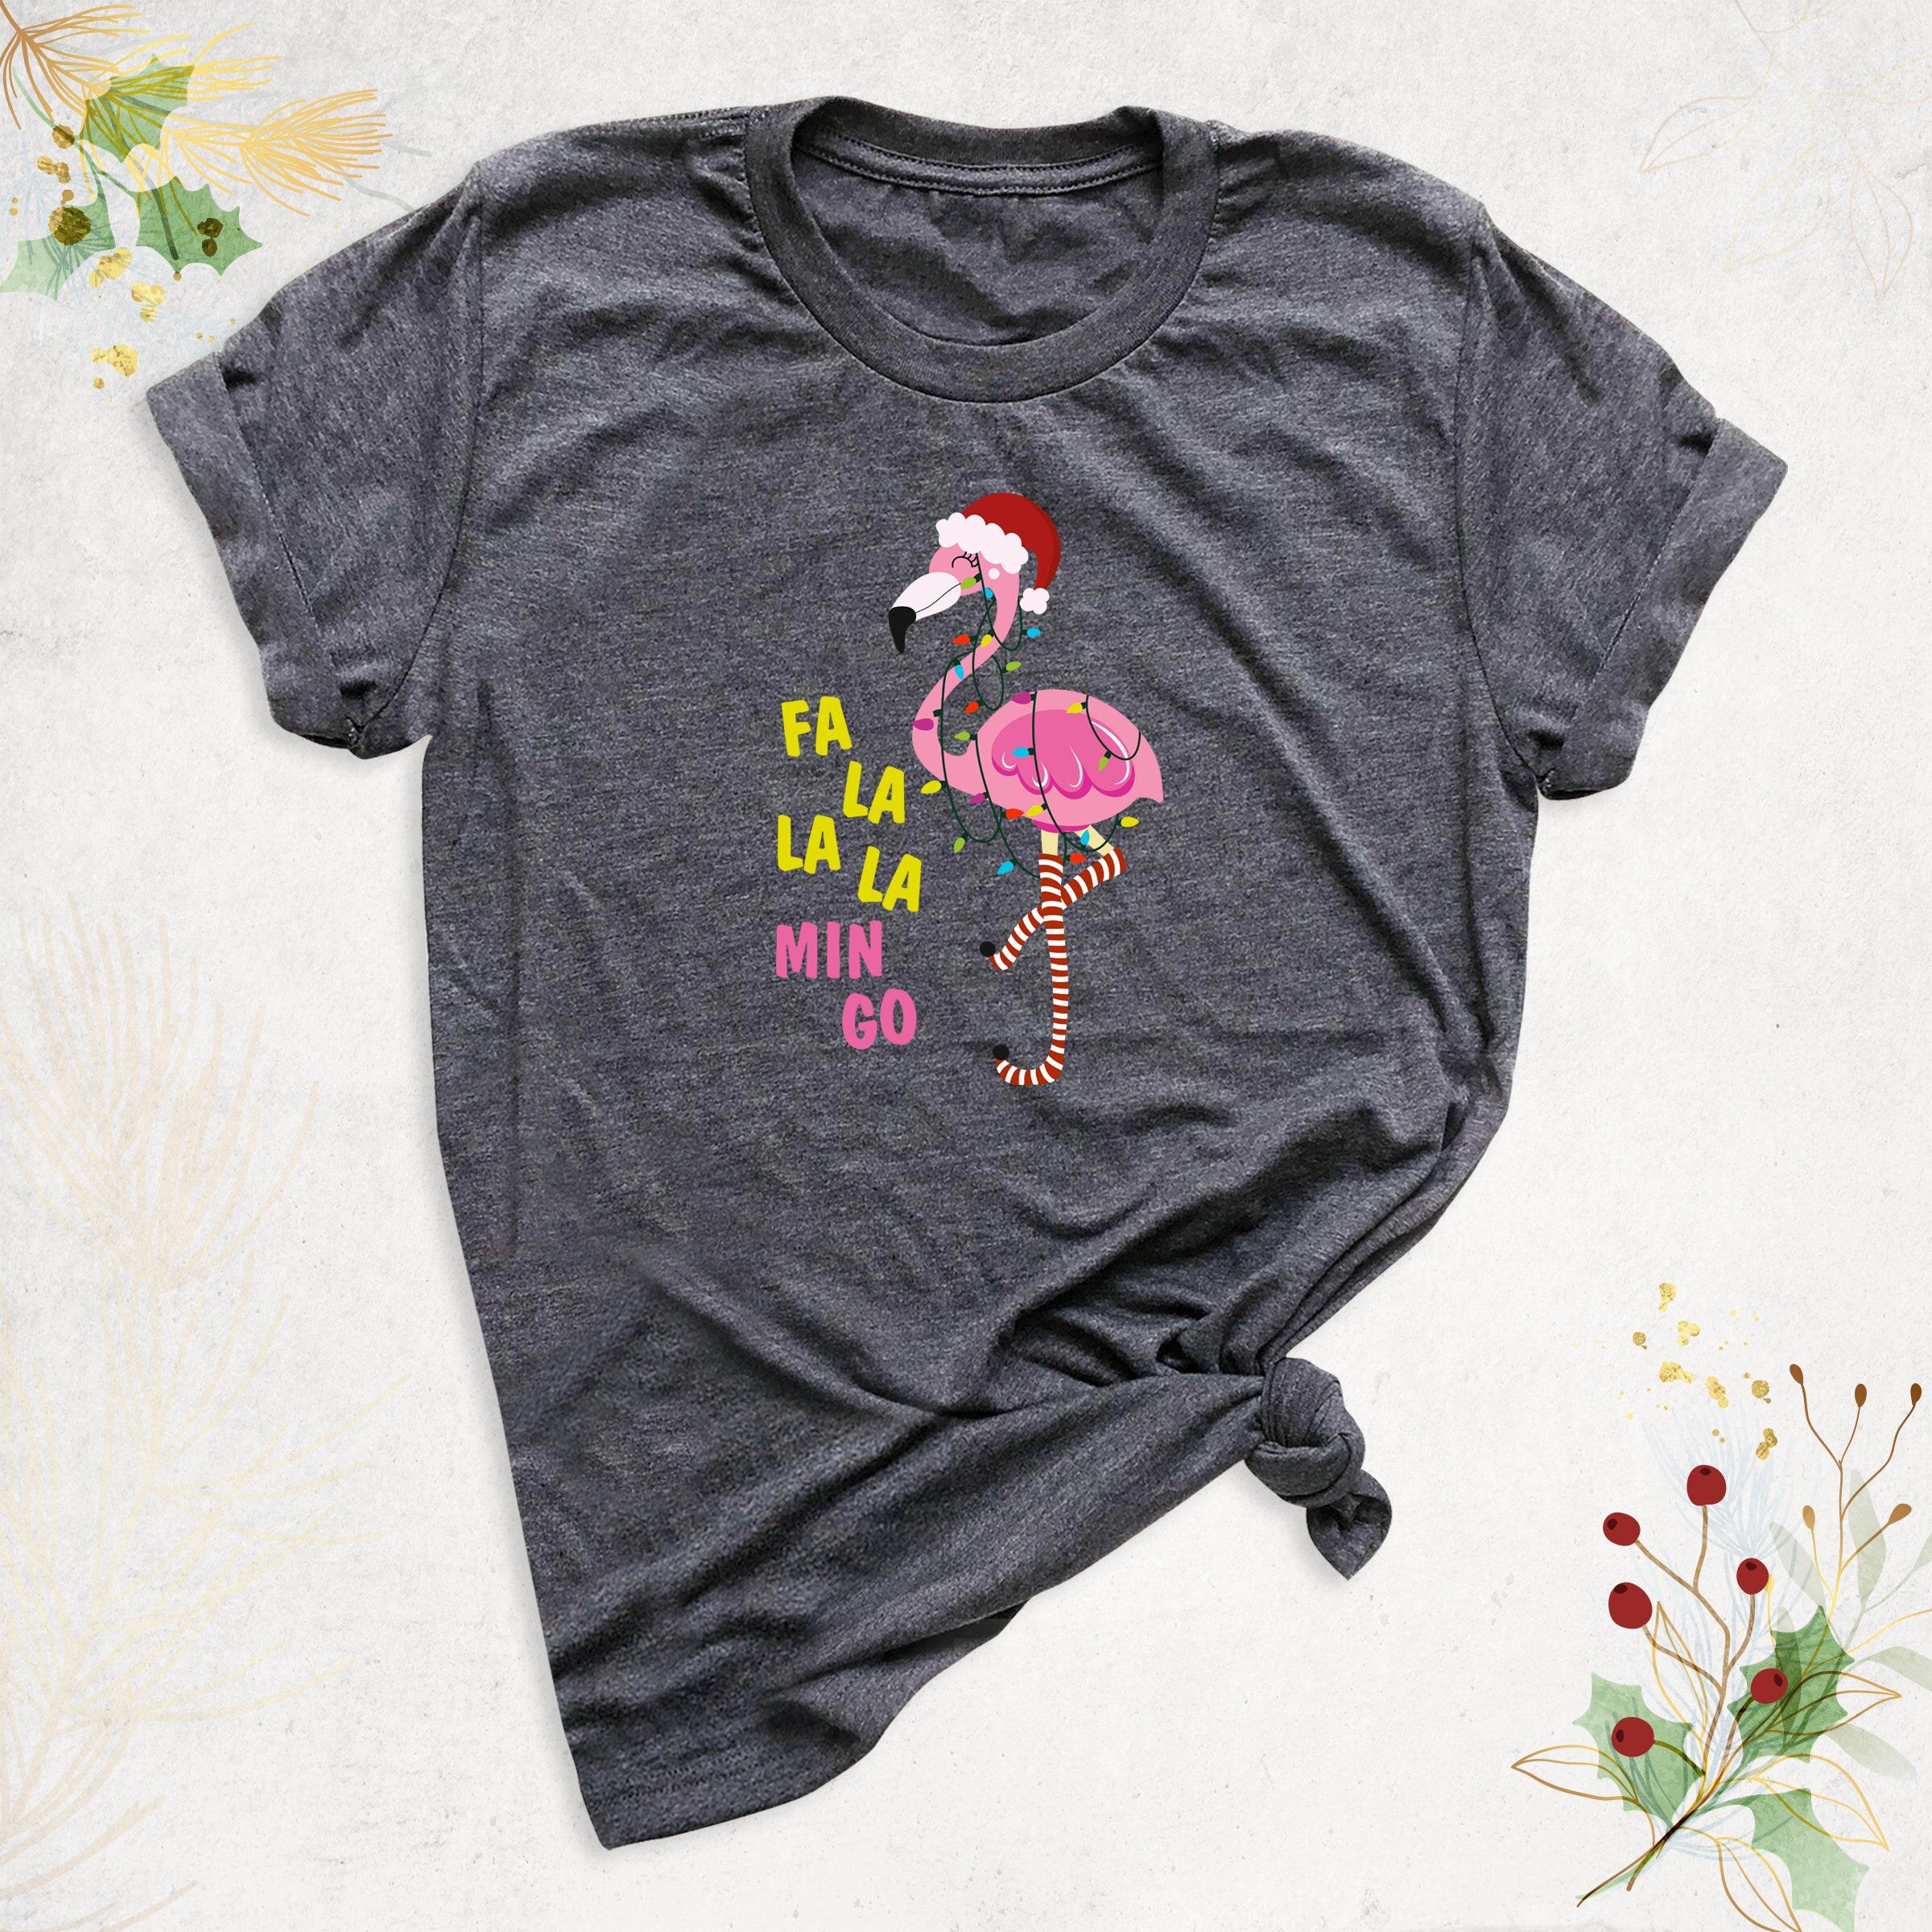 Flamingo Christmas Lights Shirt, Fa La La La Mingo Shirt, Xmas Lights Shirt, Flamingo Lover Gift, Tropical Christmas Shirt, Christmas Party